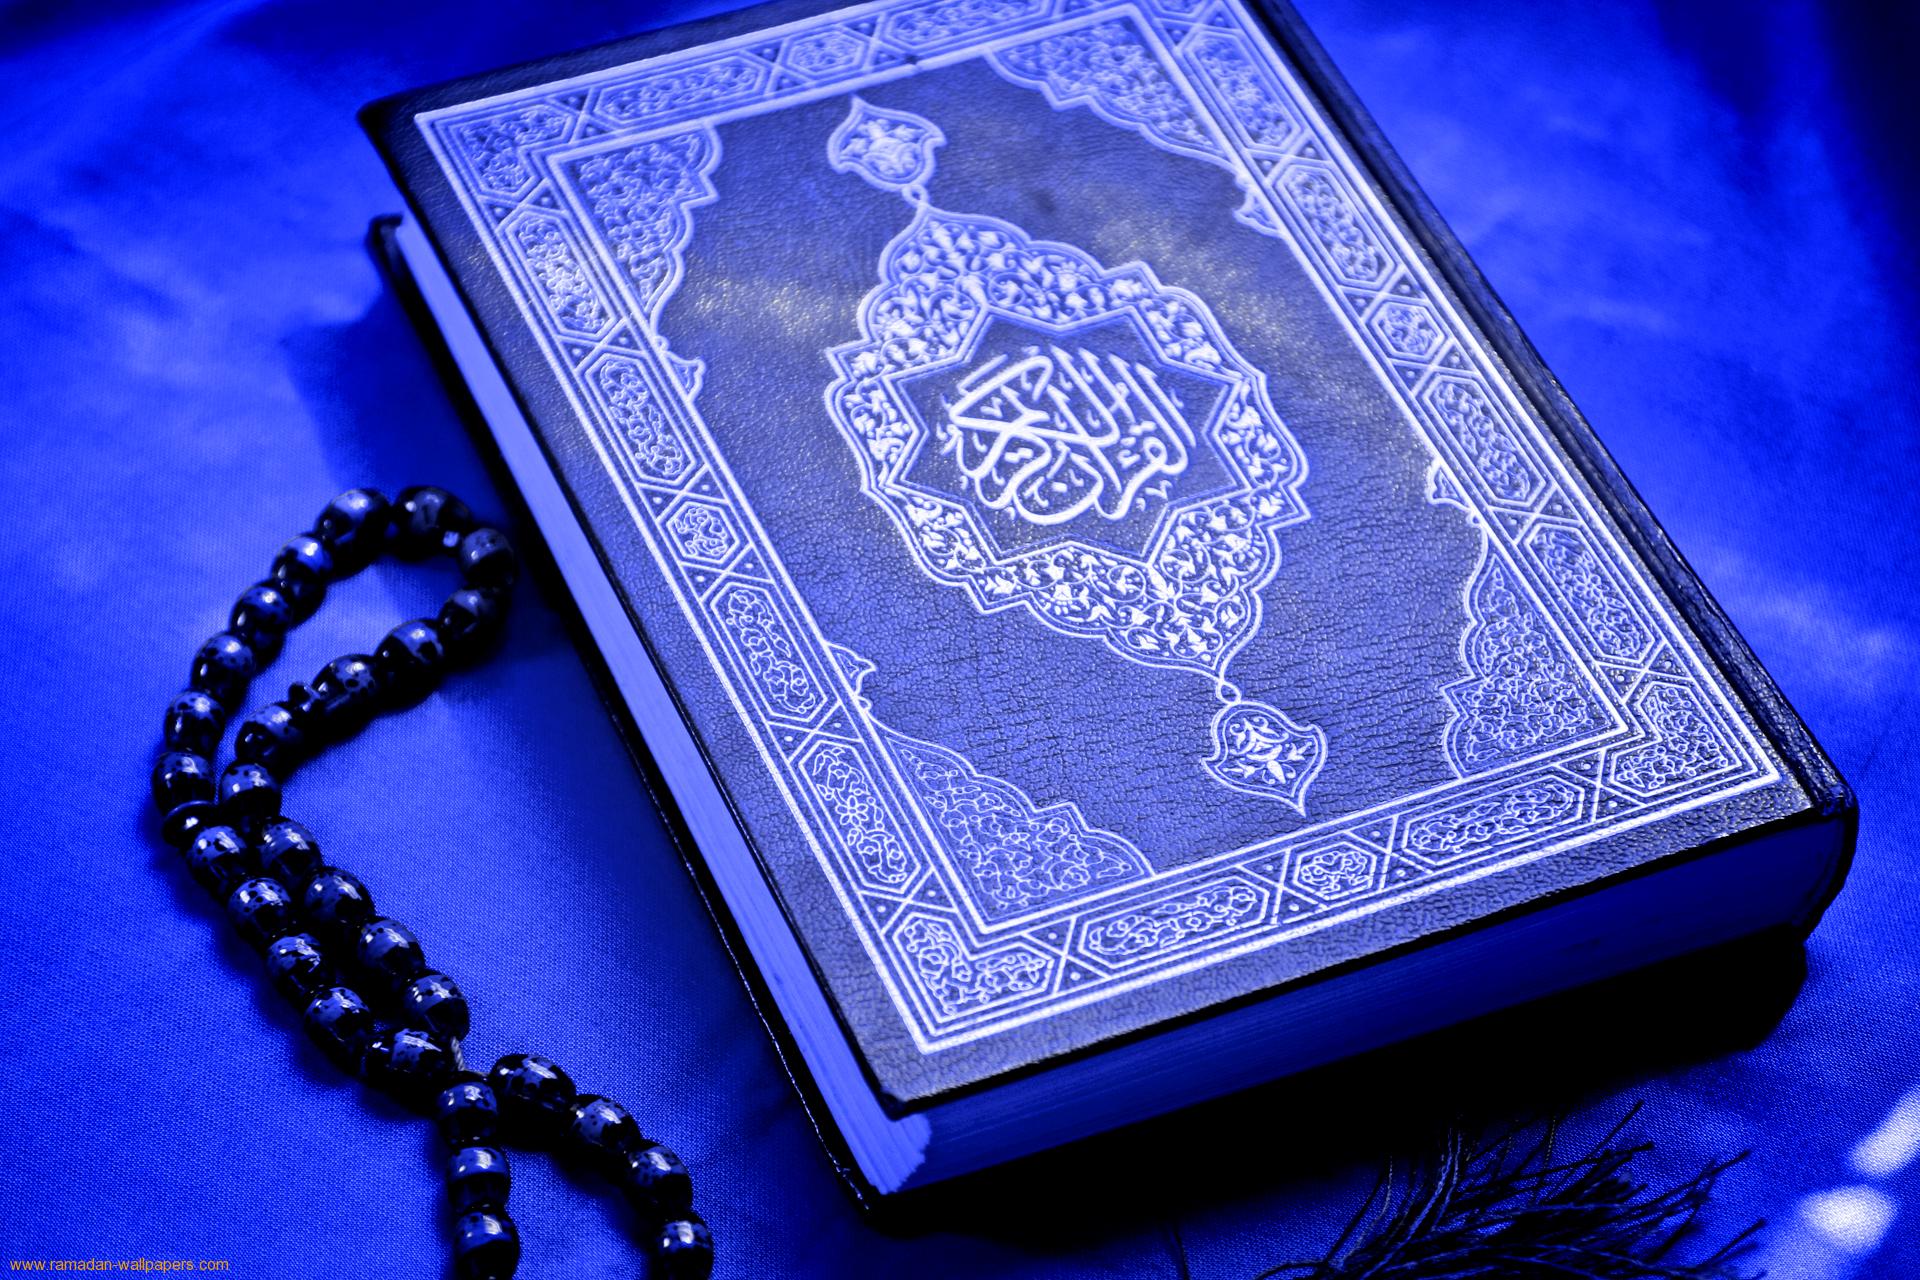 منظور از «فضل خدا» قرآن و علم به تأویل آن است